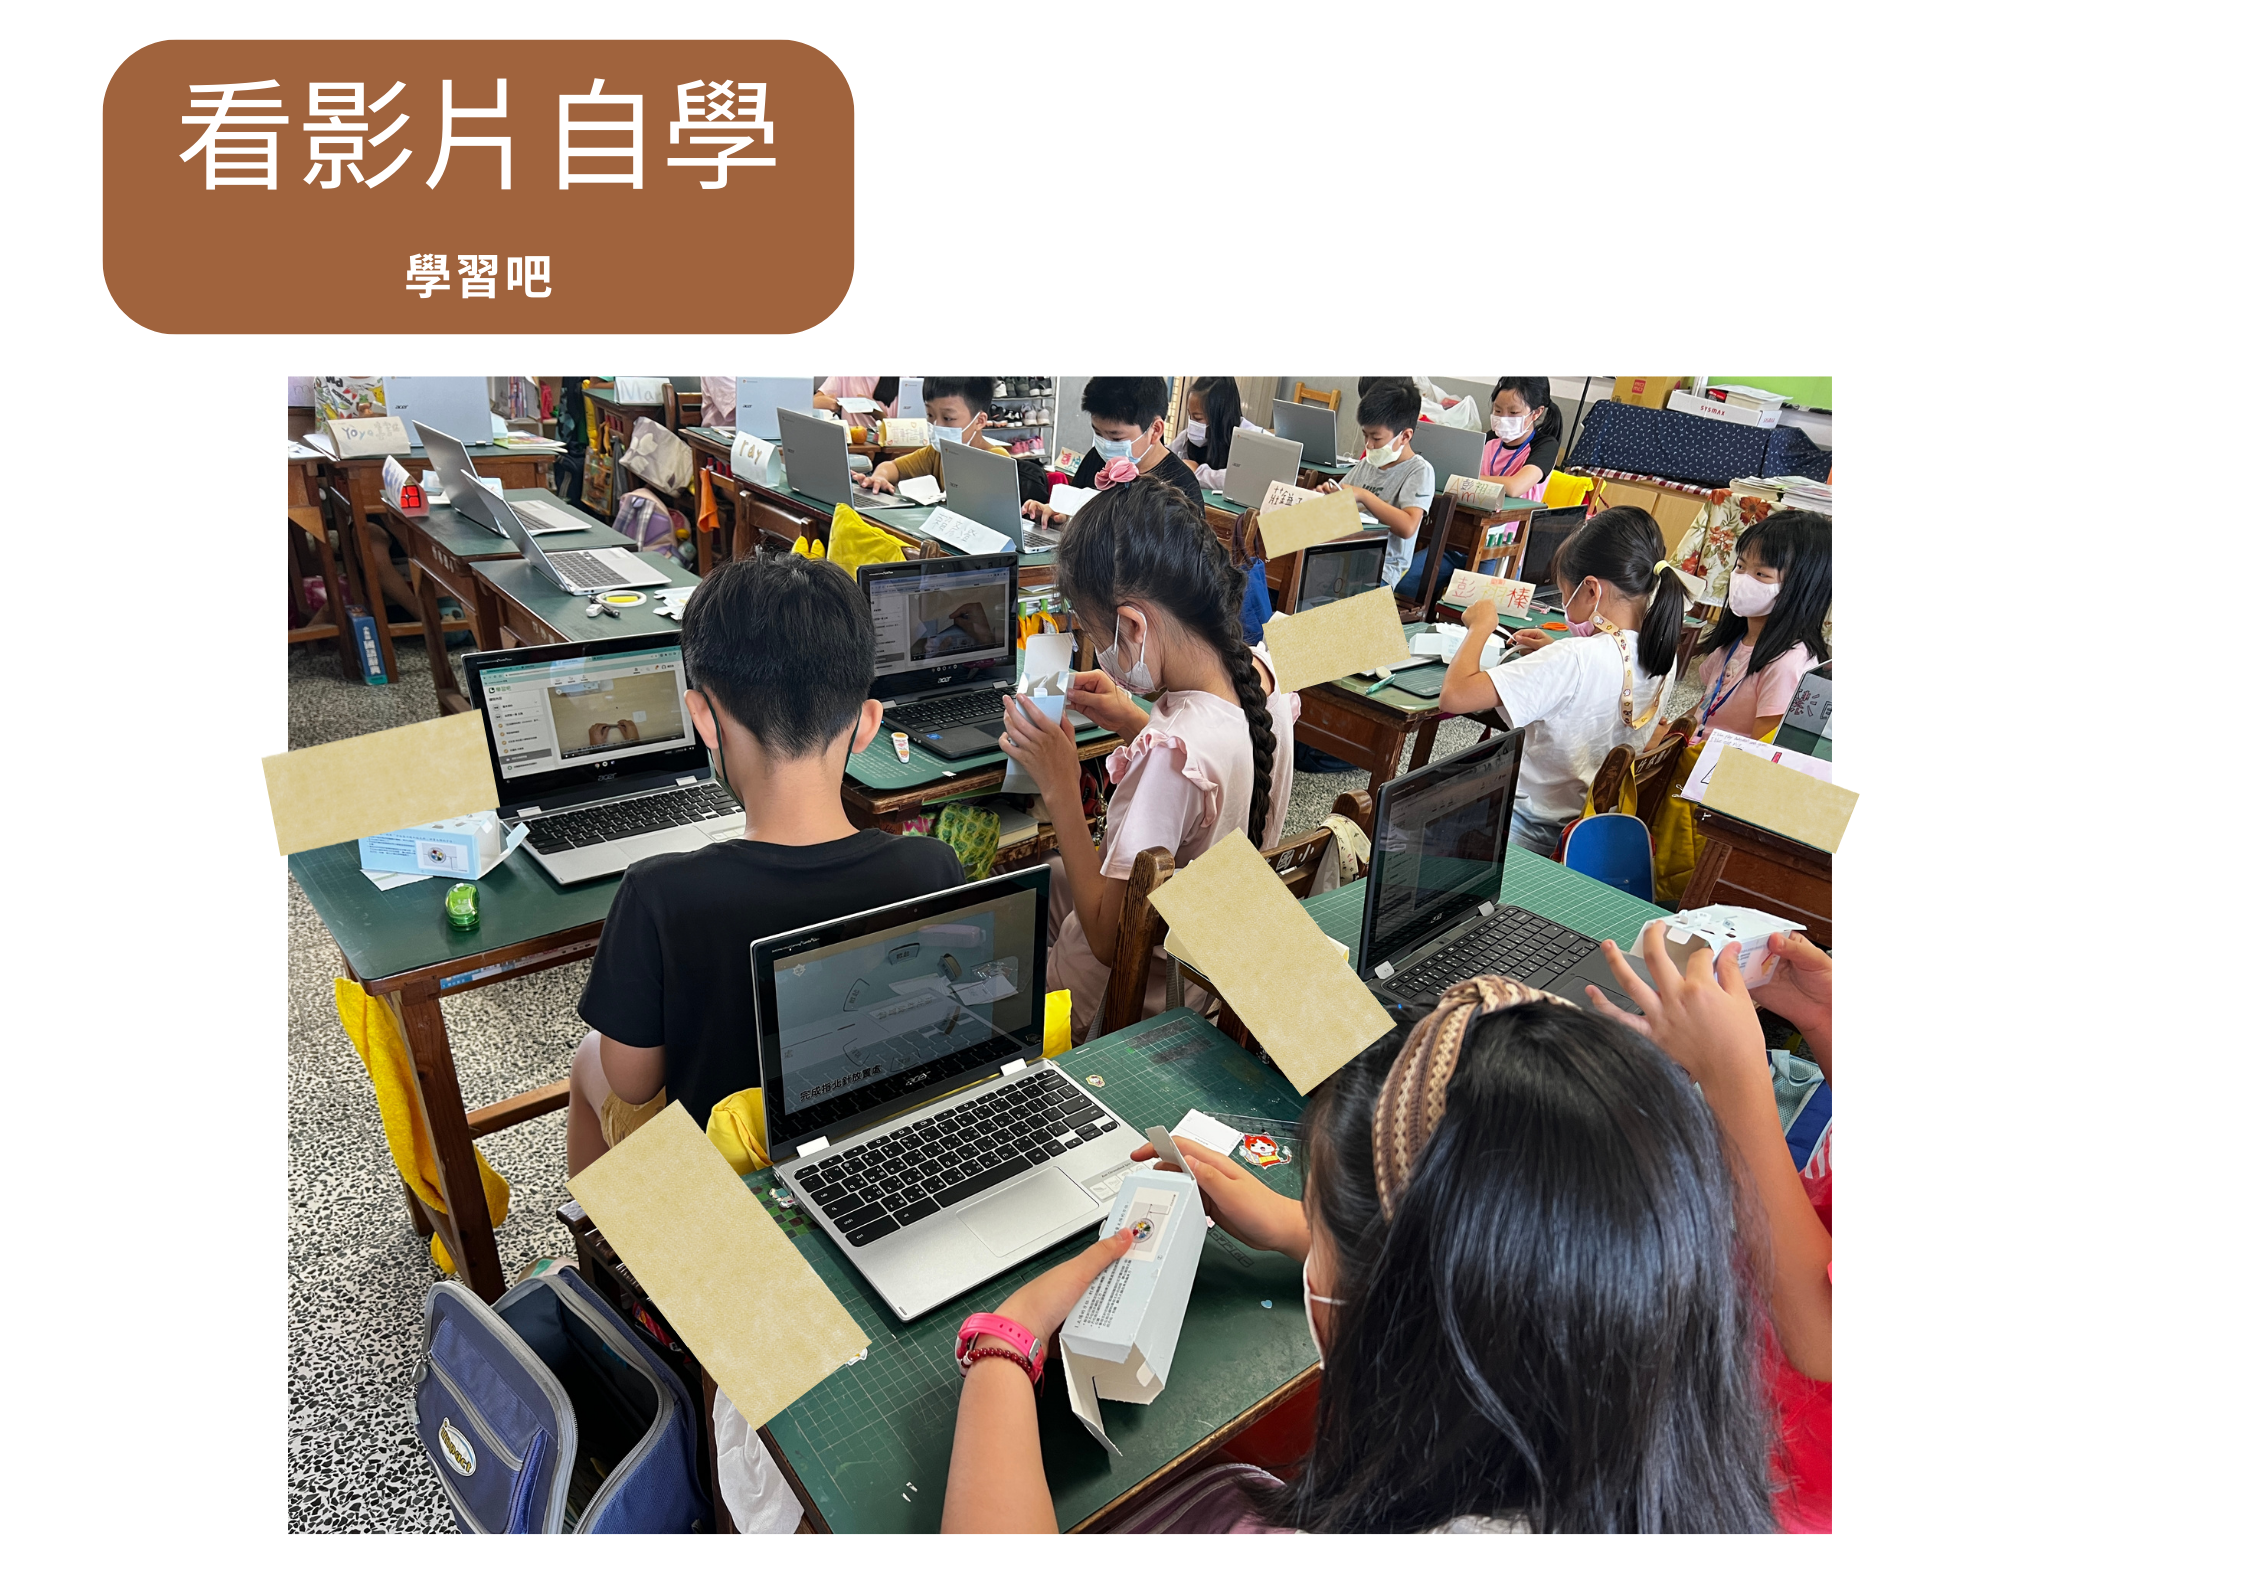 【數位學習】老師用ChromeBook投影上課，學習吧影片自學與繳交照片